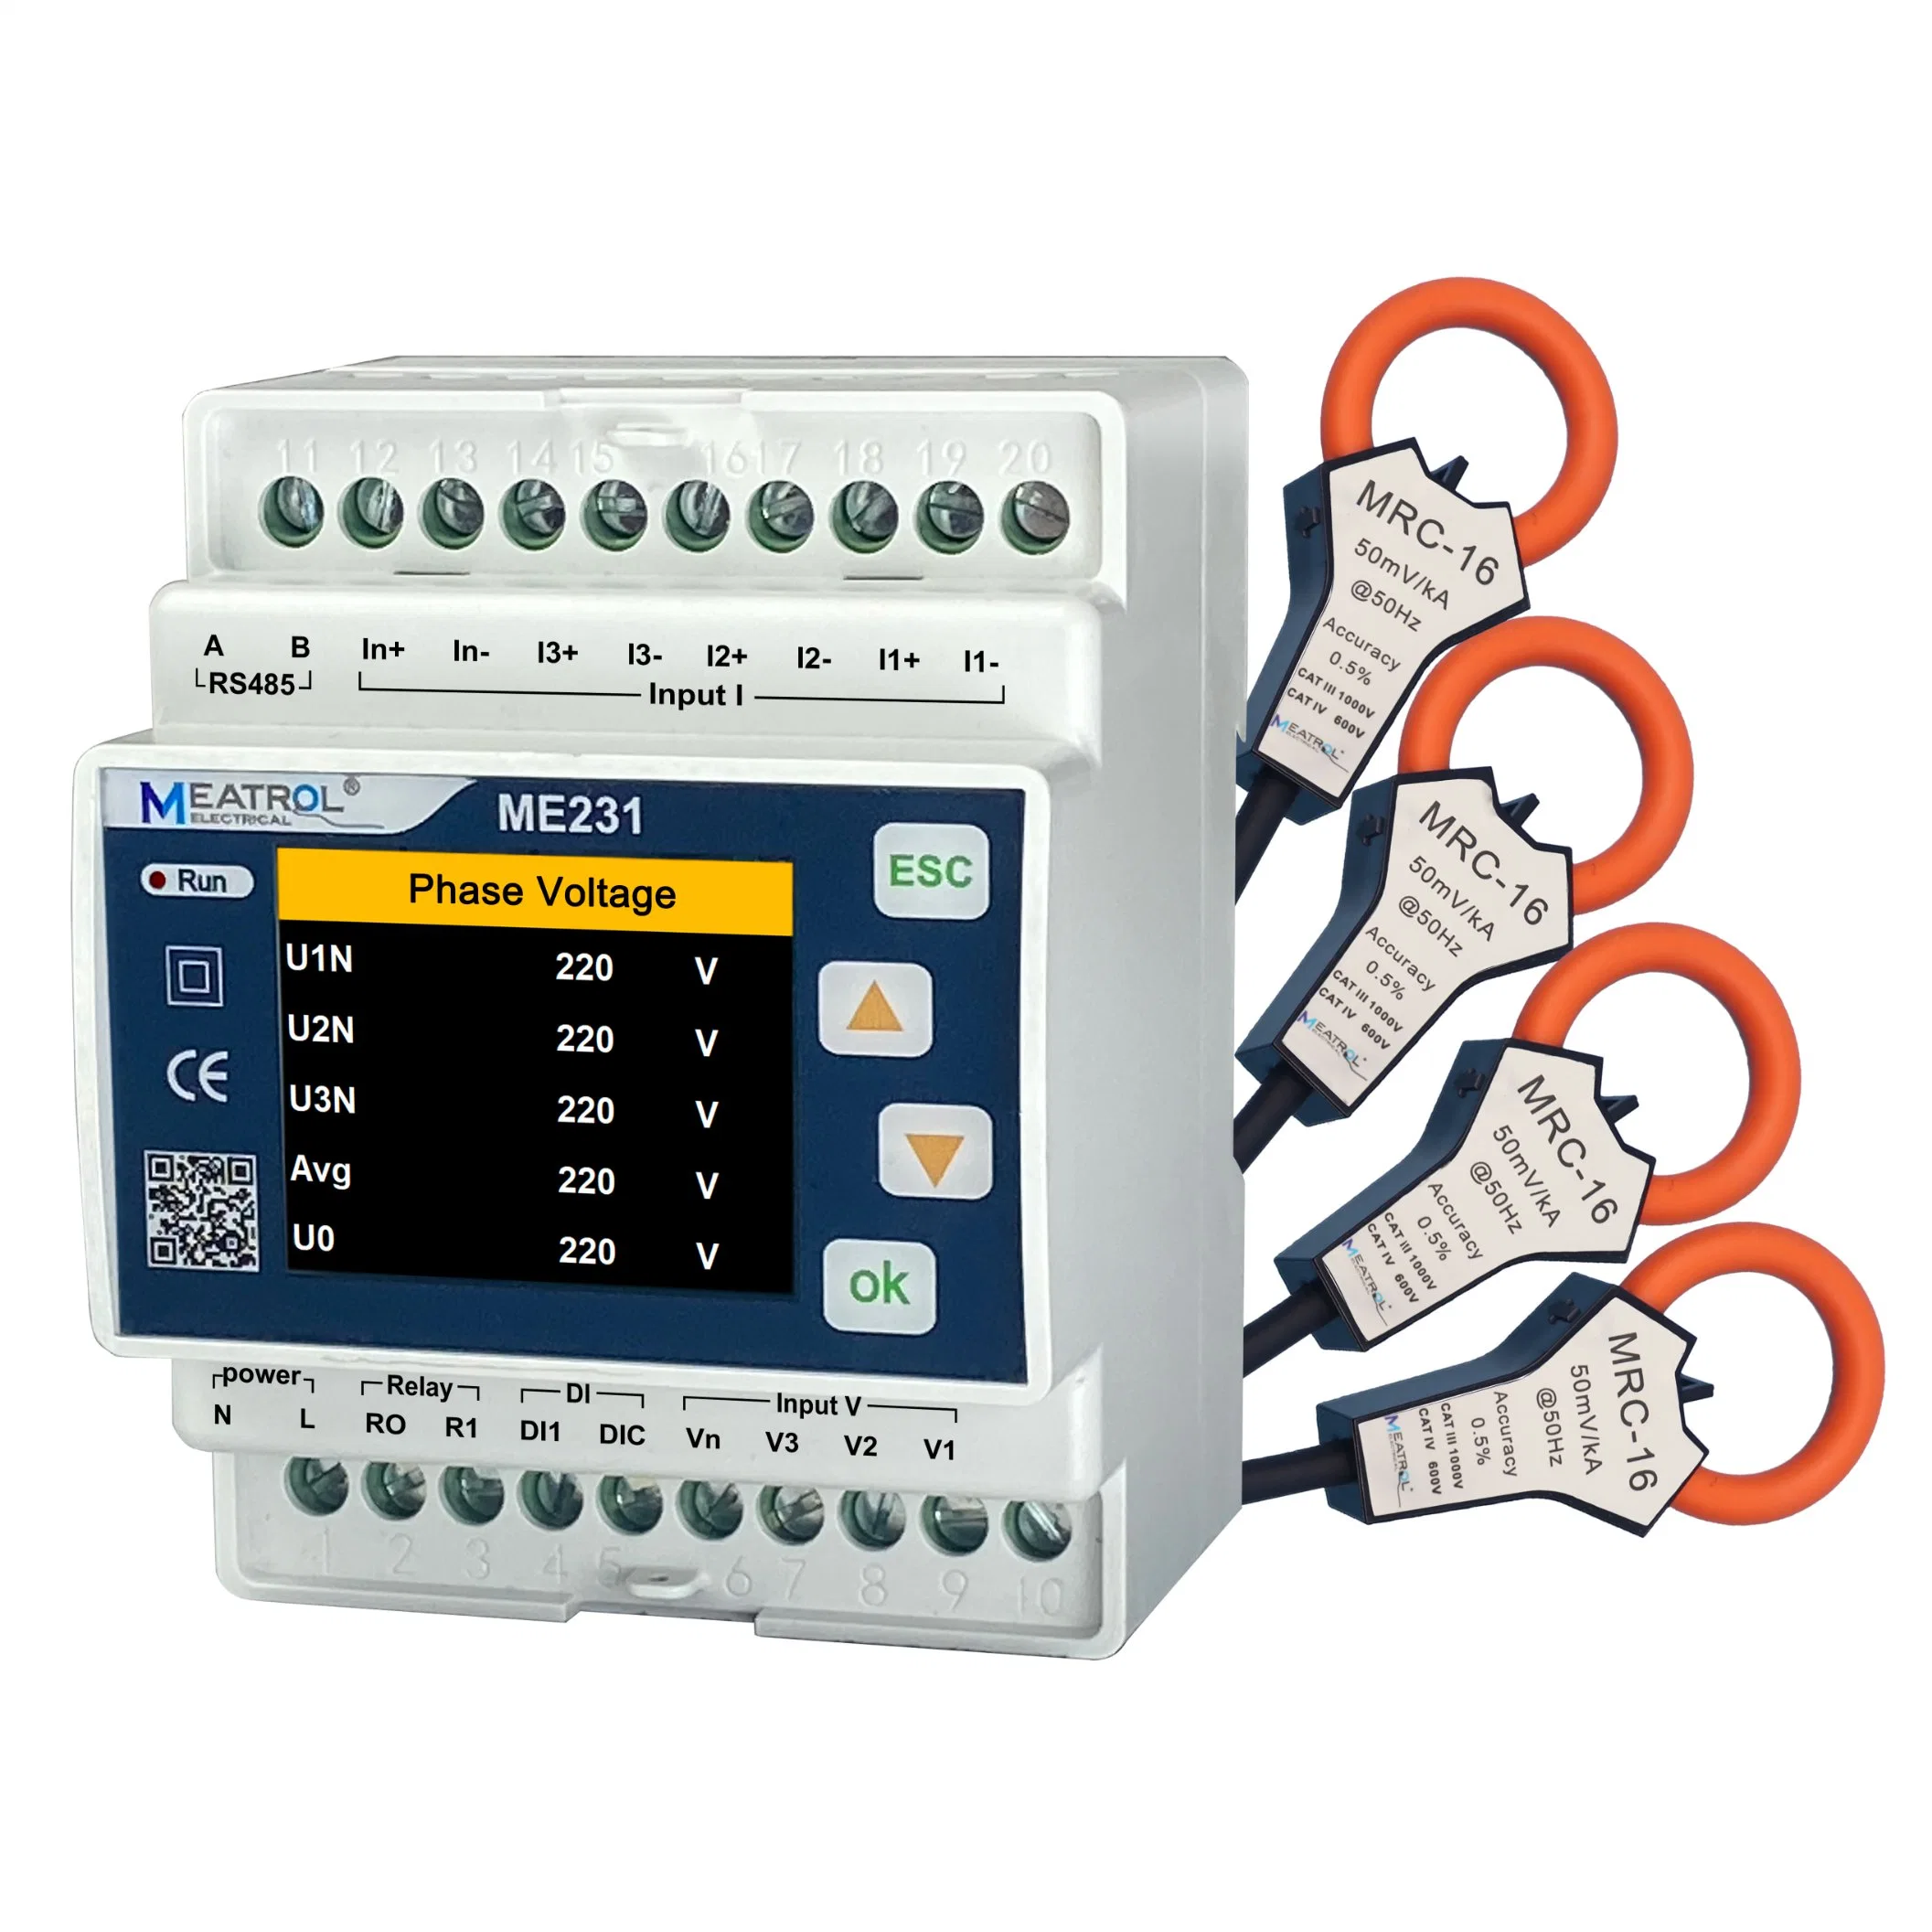 Me231 Energieverbrauchsmessgerät Für Die Energieüberwachung Von Hoher Qualität